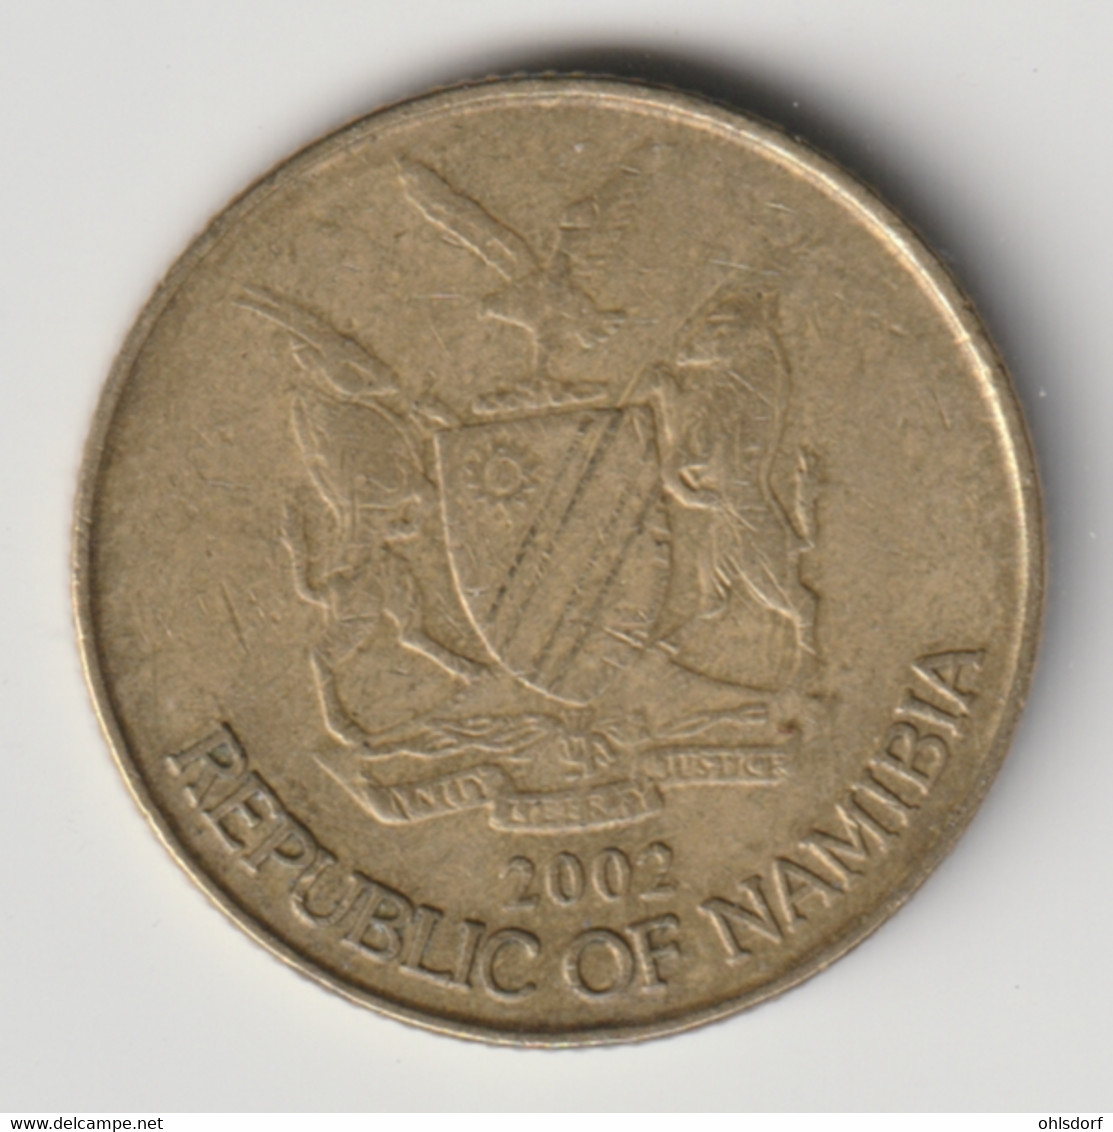 NAMIBIA 2002: 1 Dollar, KM 4 - Namibie